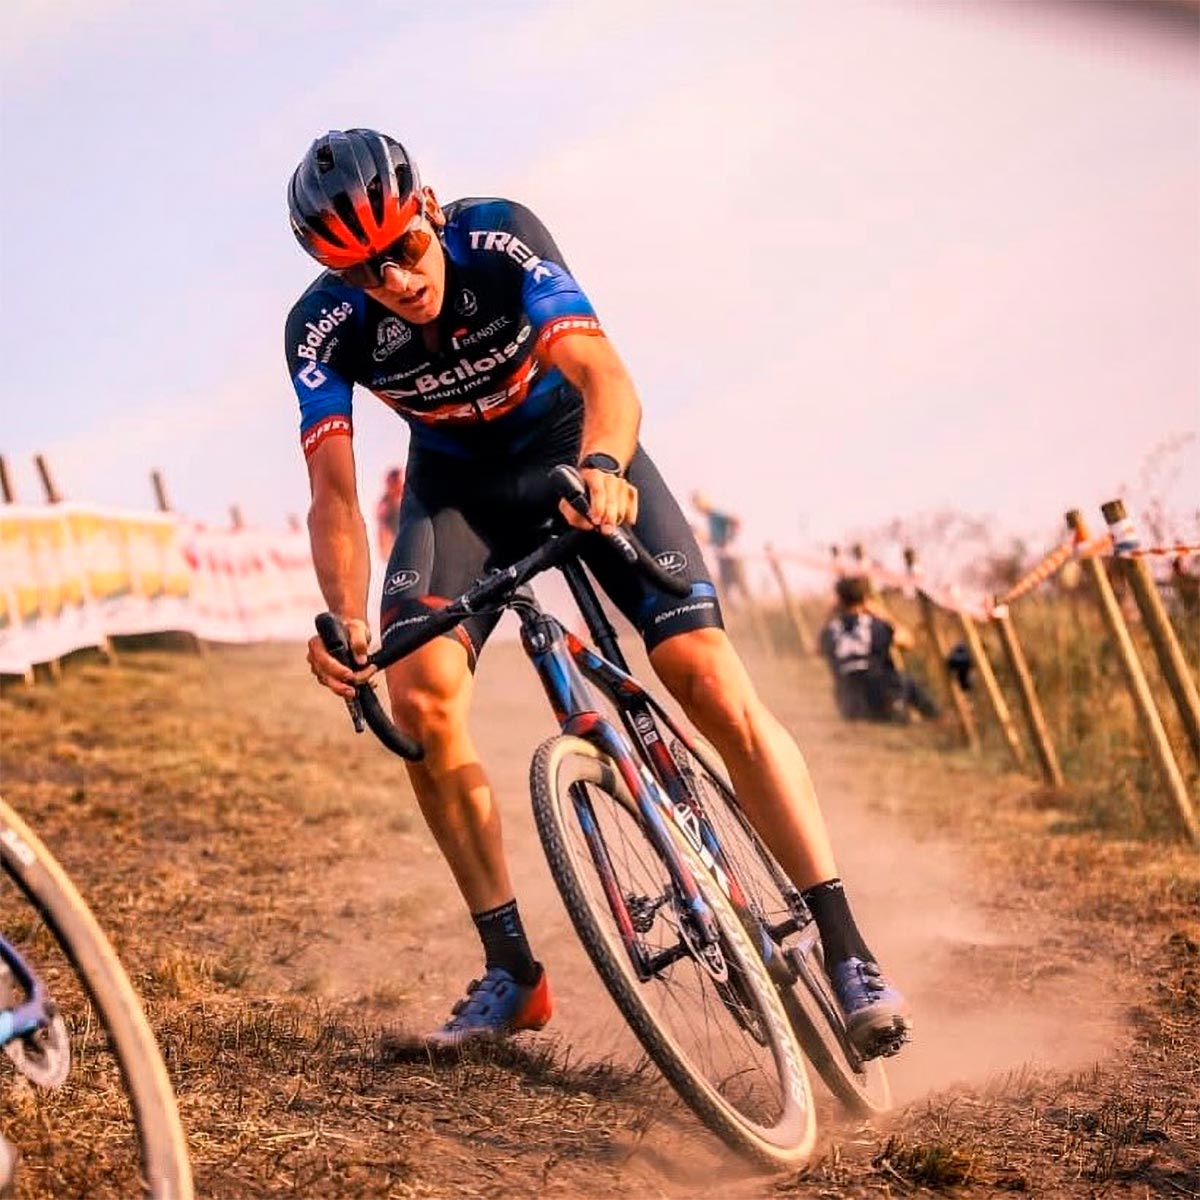 El ciclista belga Toon Aerts, suspendido dos años por dopaje: "Voy a hacer todo lo posible por demostrar mi inocencia"